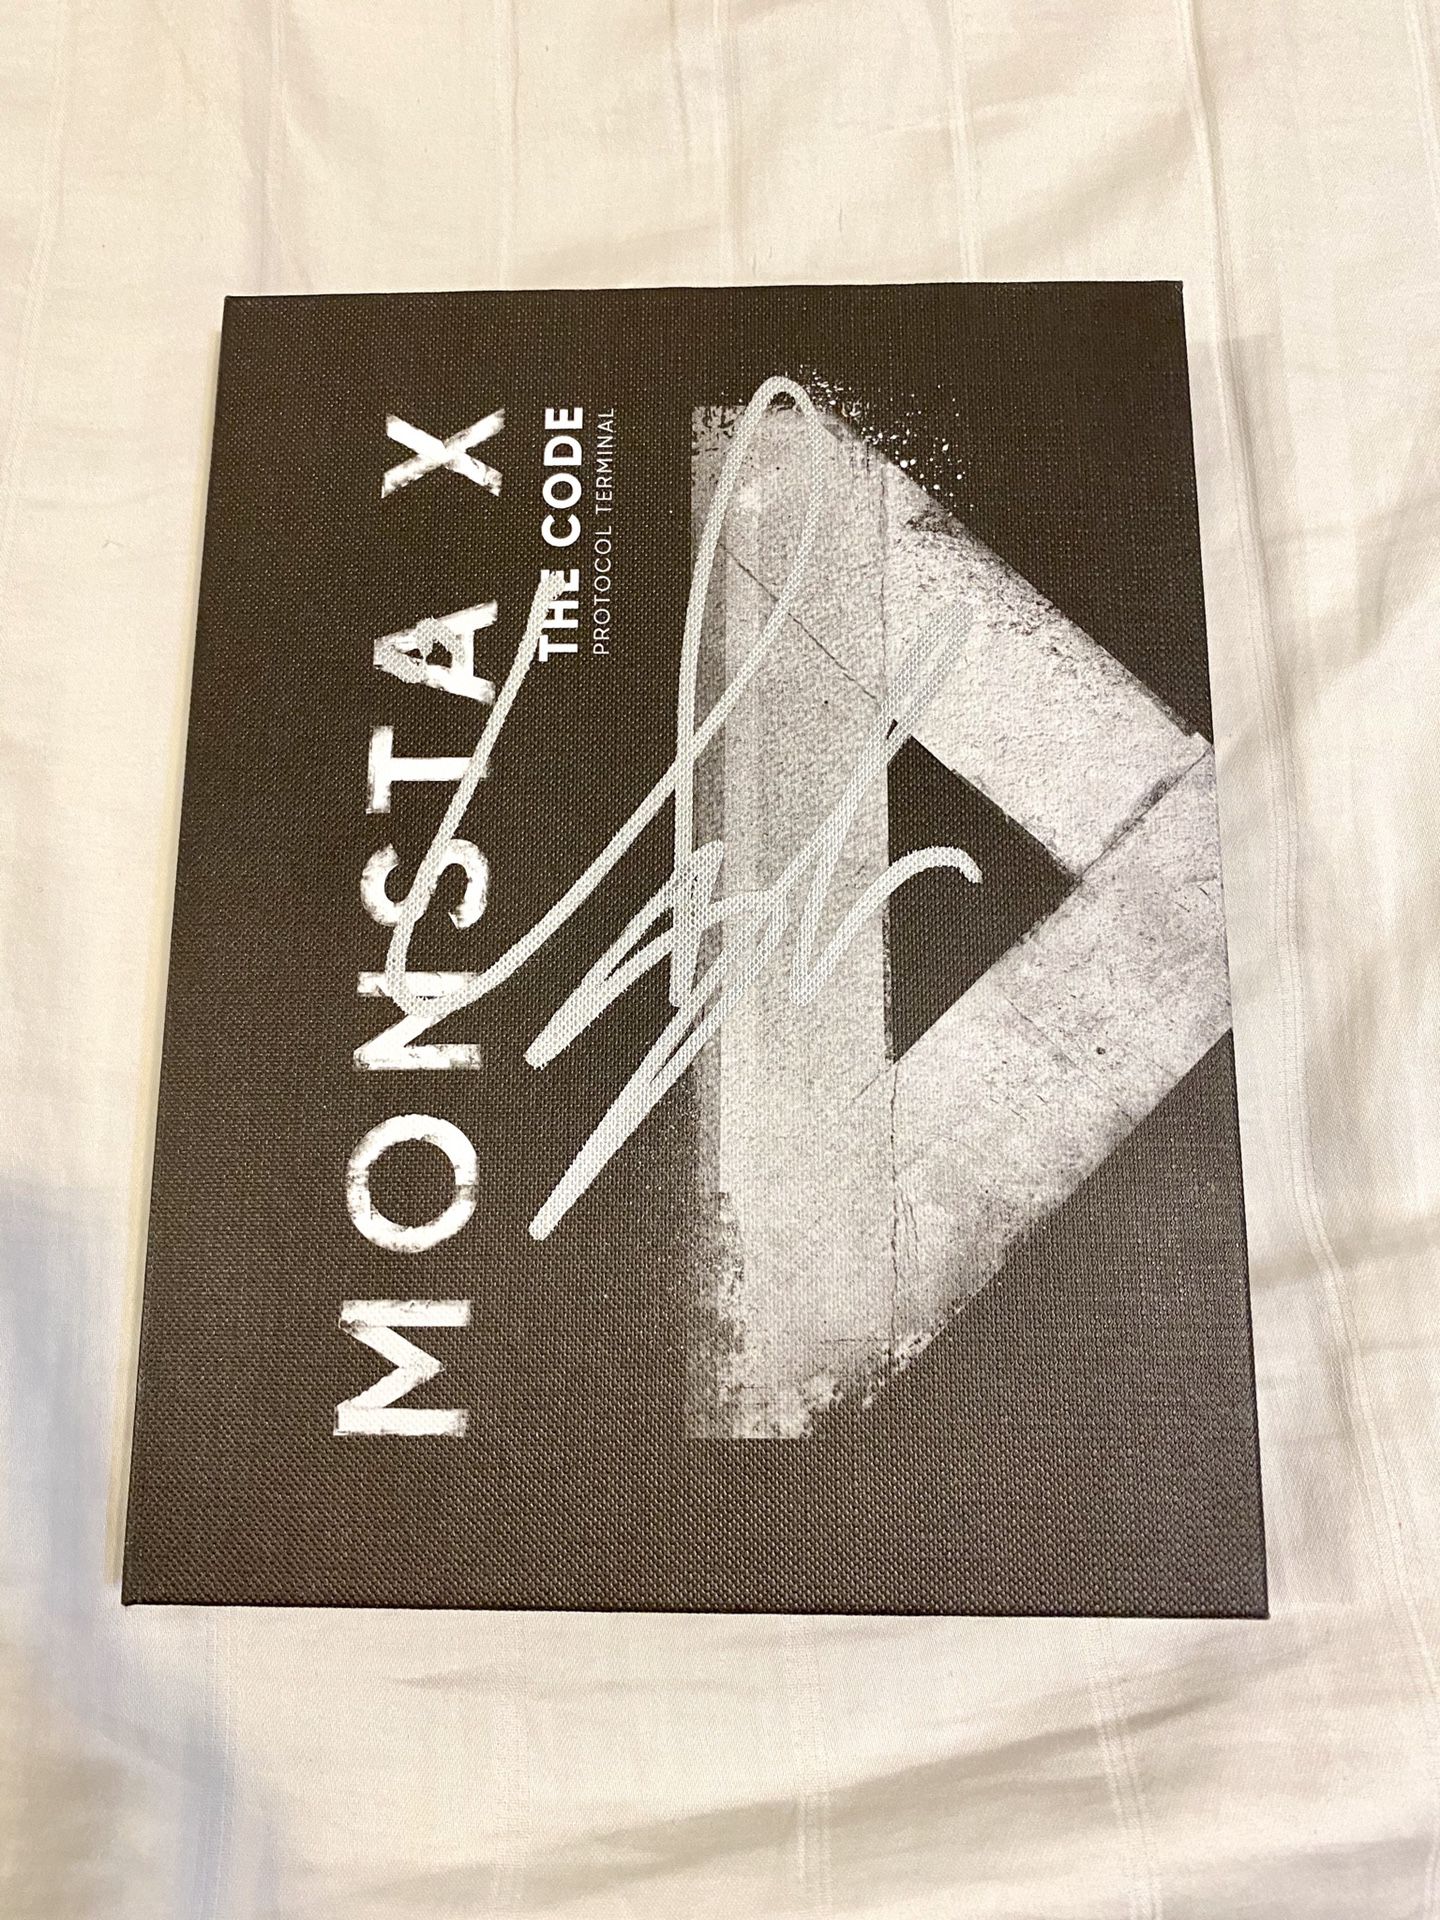 Monsta X - The Code 5th Mini Album Protocol Terminal Ver.